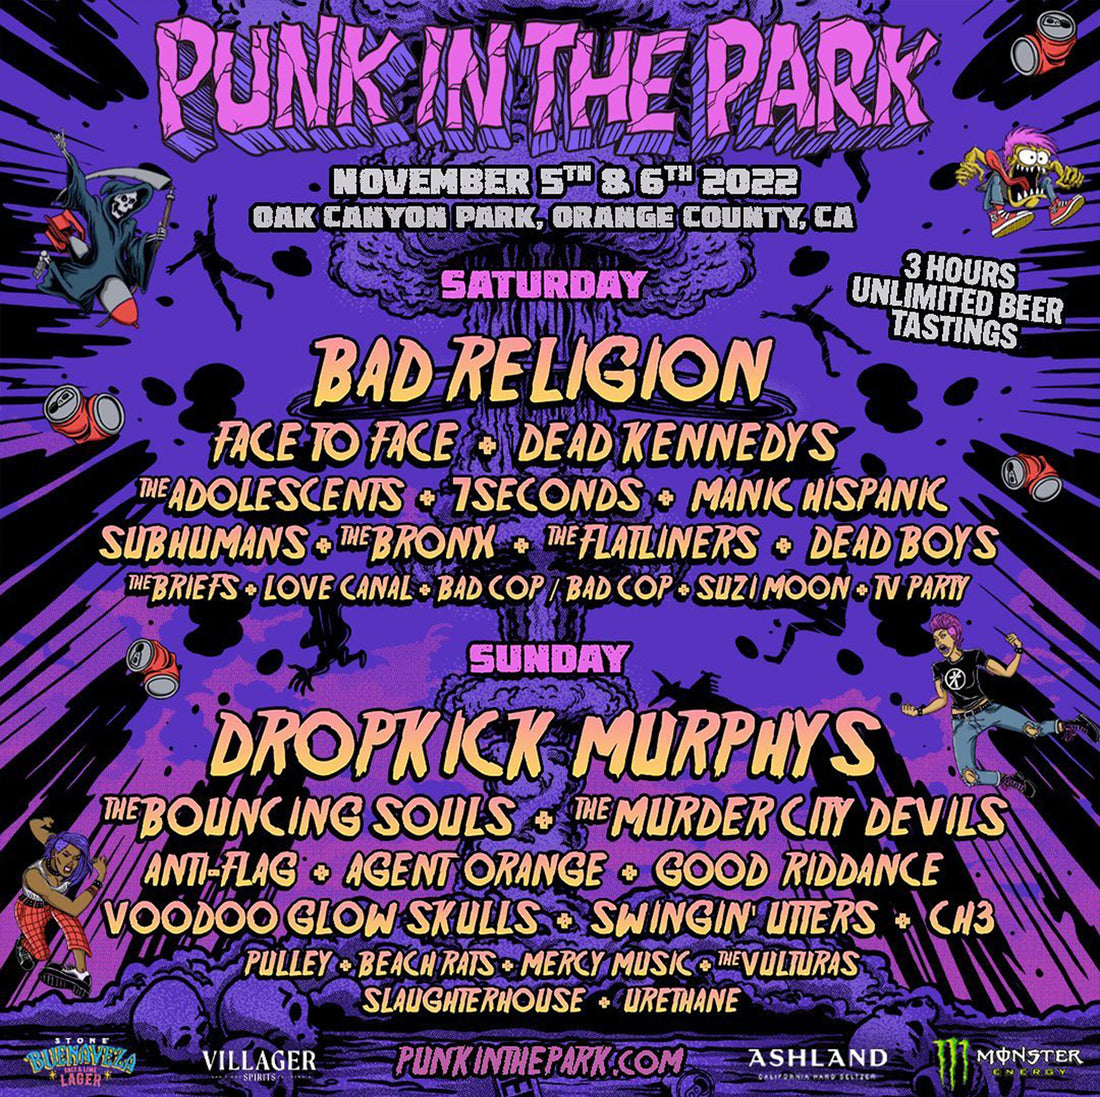 Punk in The Park 2022 Sat Nov. 5th & Sat Nov. 6th 2022 Silverado CA.